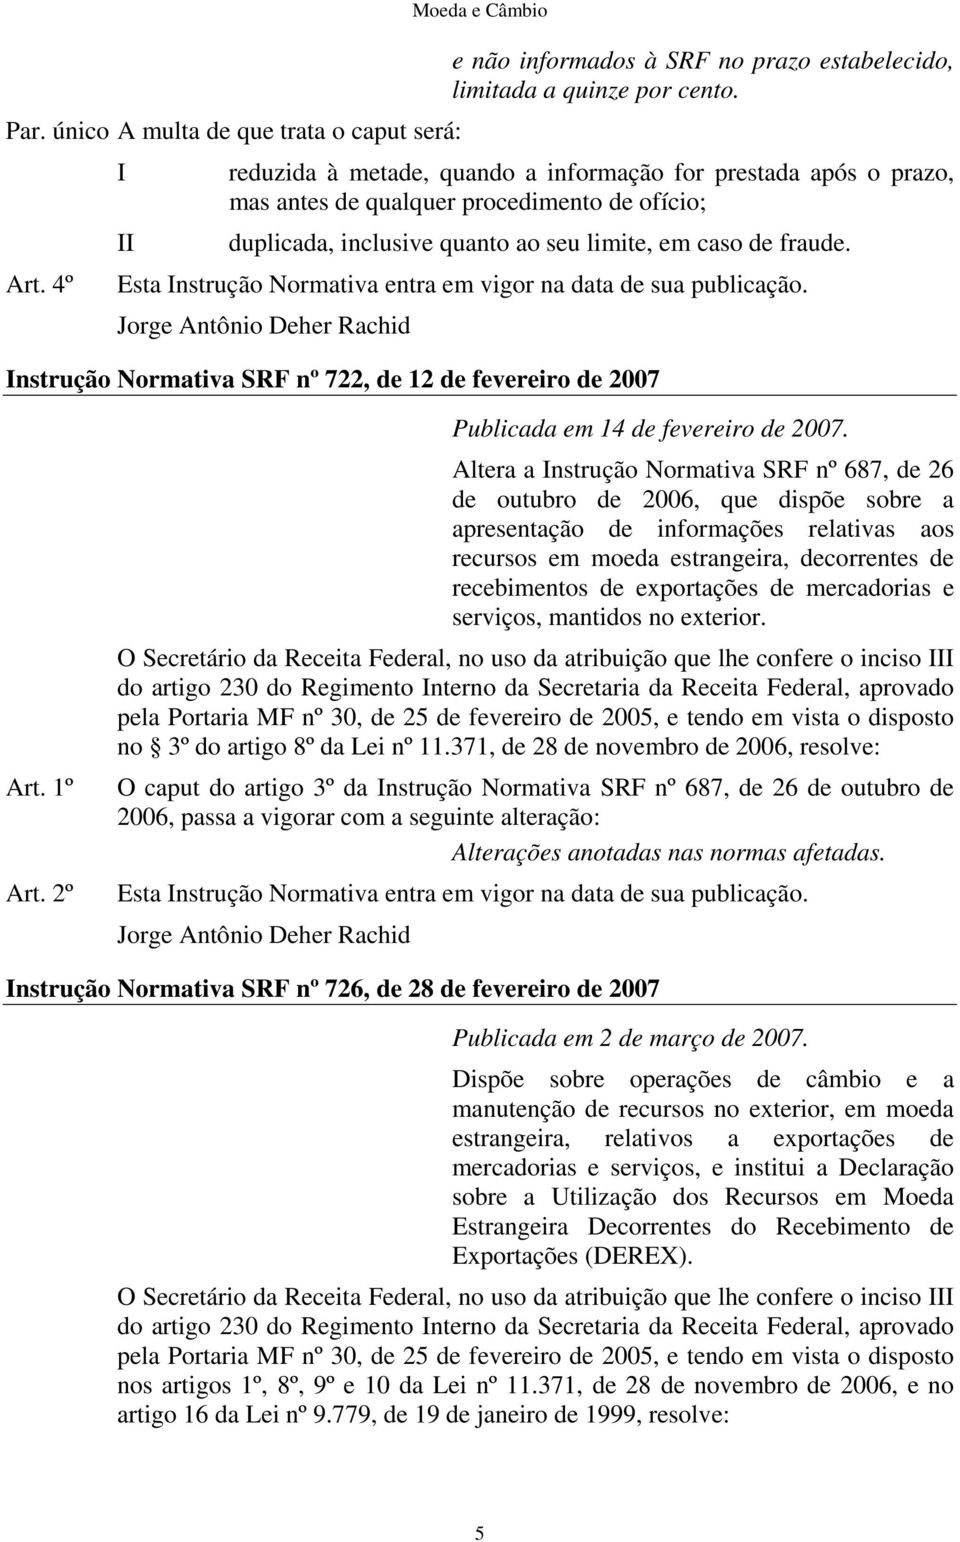 Esta nstrução Normativa entra em vigor na data de sua publicação. Jorge Antônio Deher Rachid nstrução Normativa SRF nº 722, de 12 de fevereiro de 2007 Art. 1º Art.